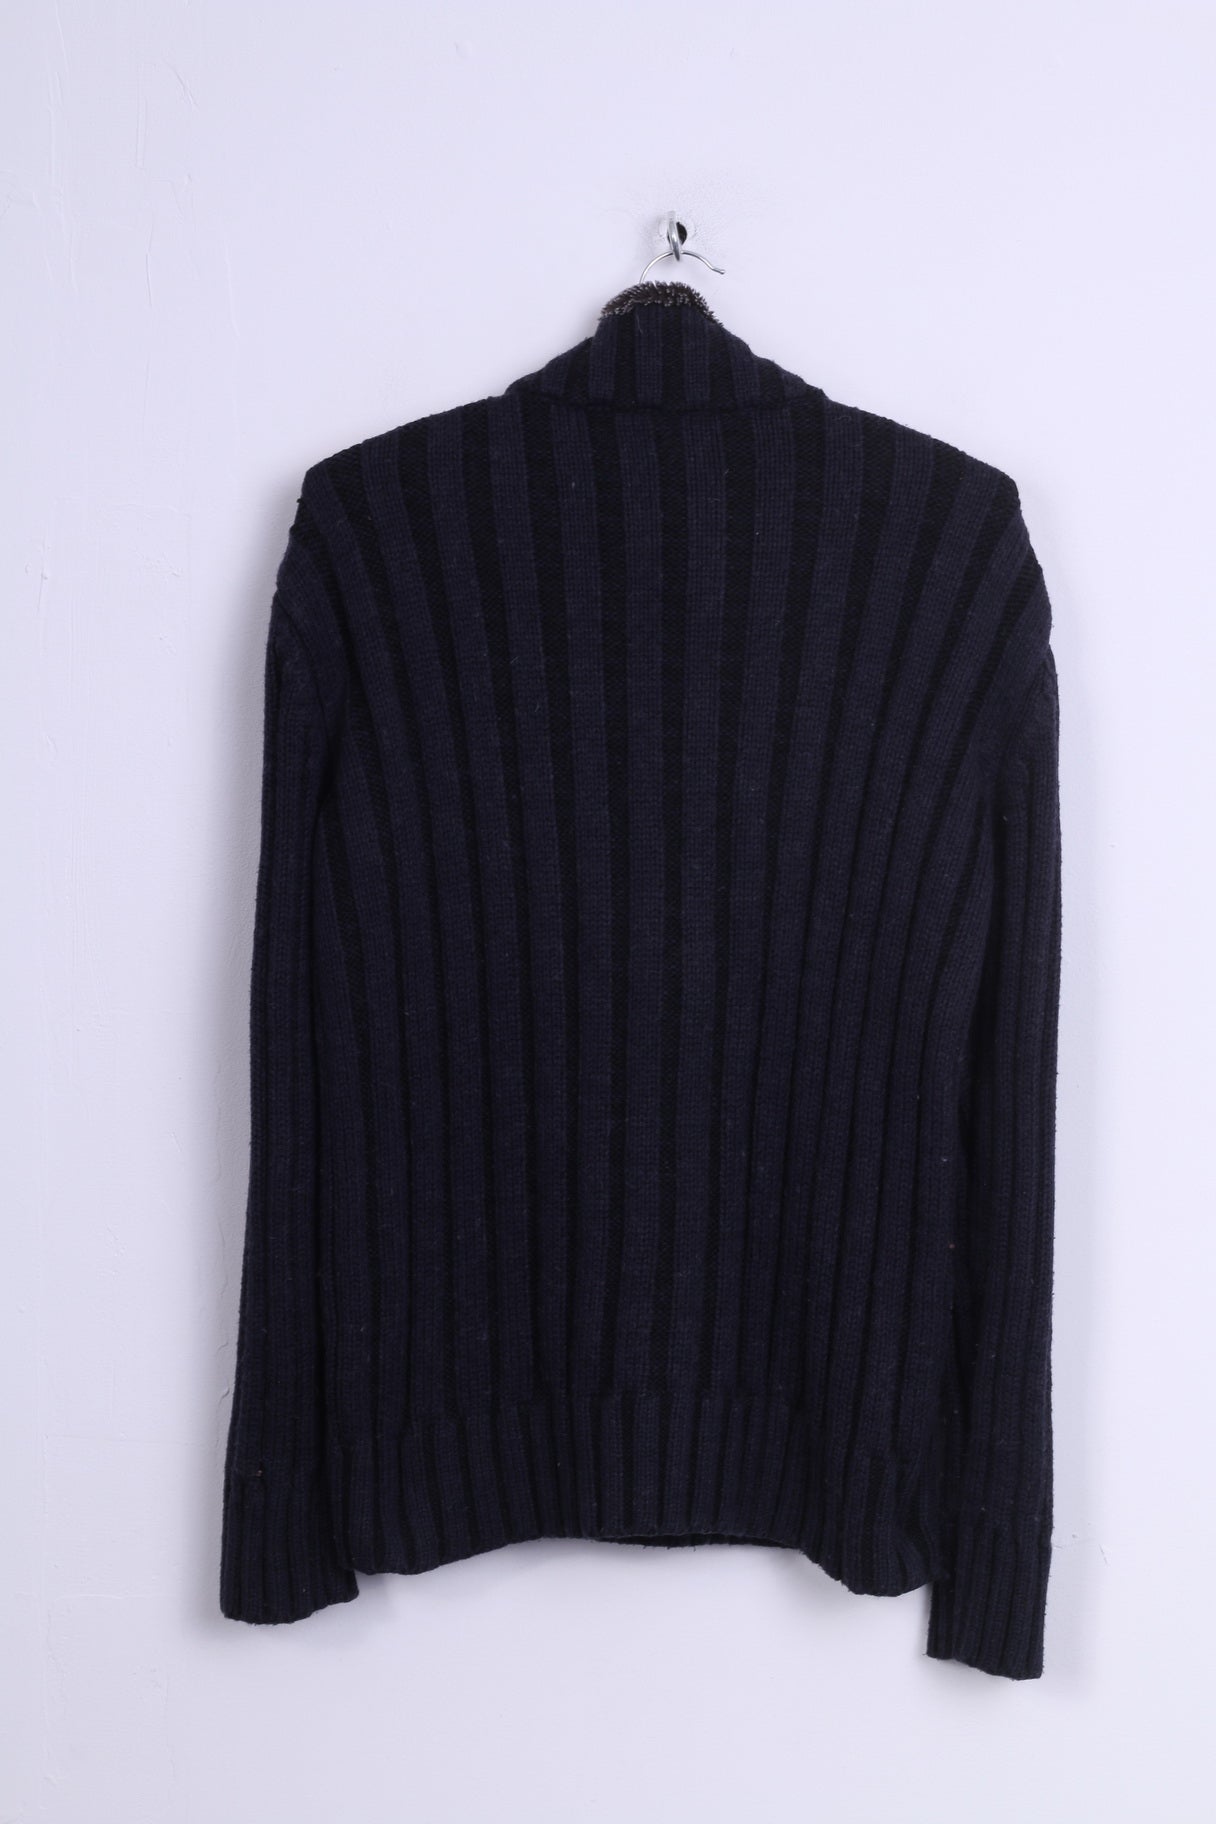 Ce & Ce Mens L (M) Sweater Navy Wool Sweater Knittwear Zip Neck Jumper